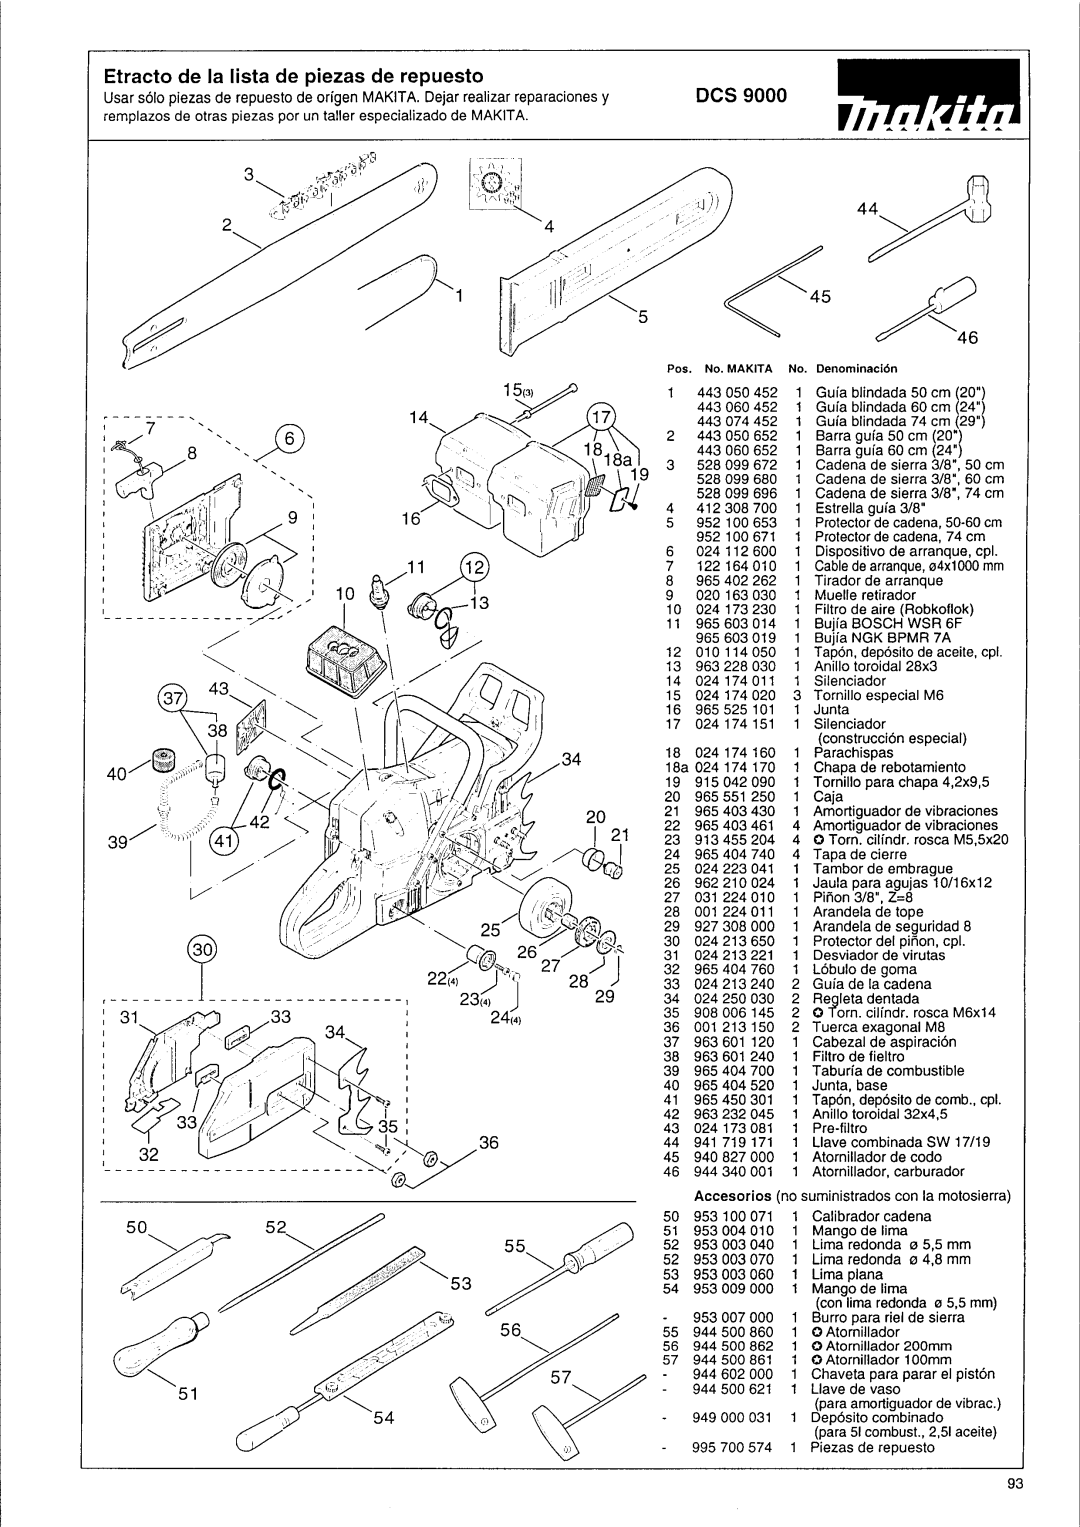 Makita DCS 9000 manual Etracto de la lista de piezas de repuesto 